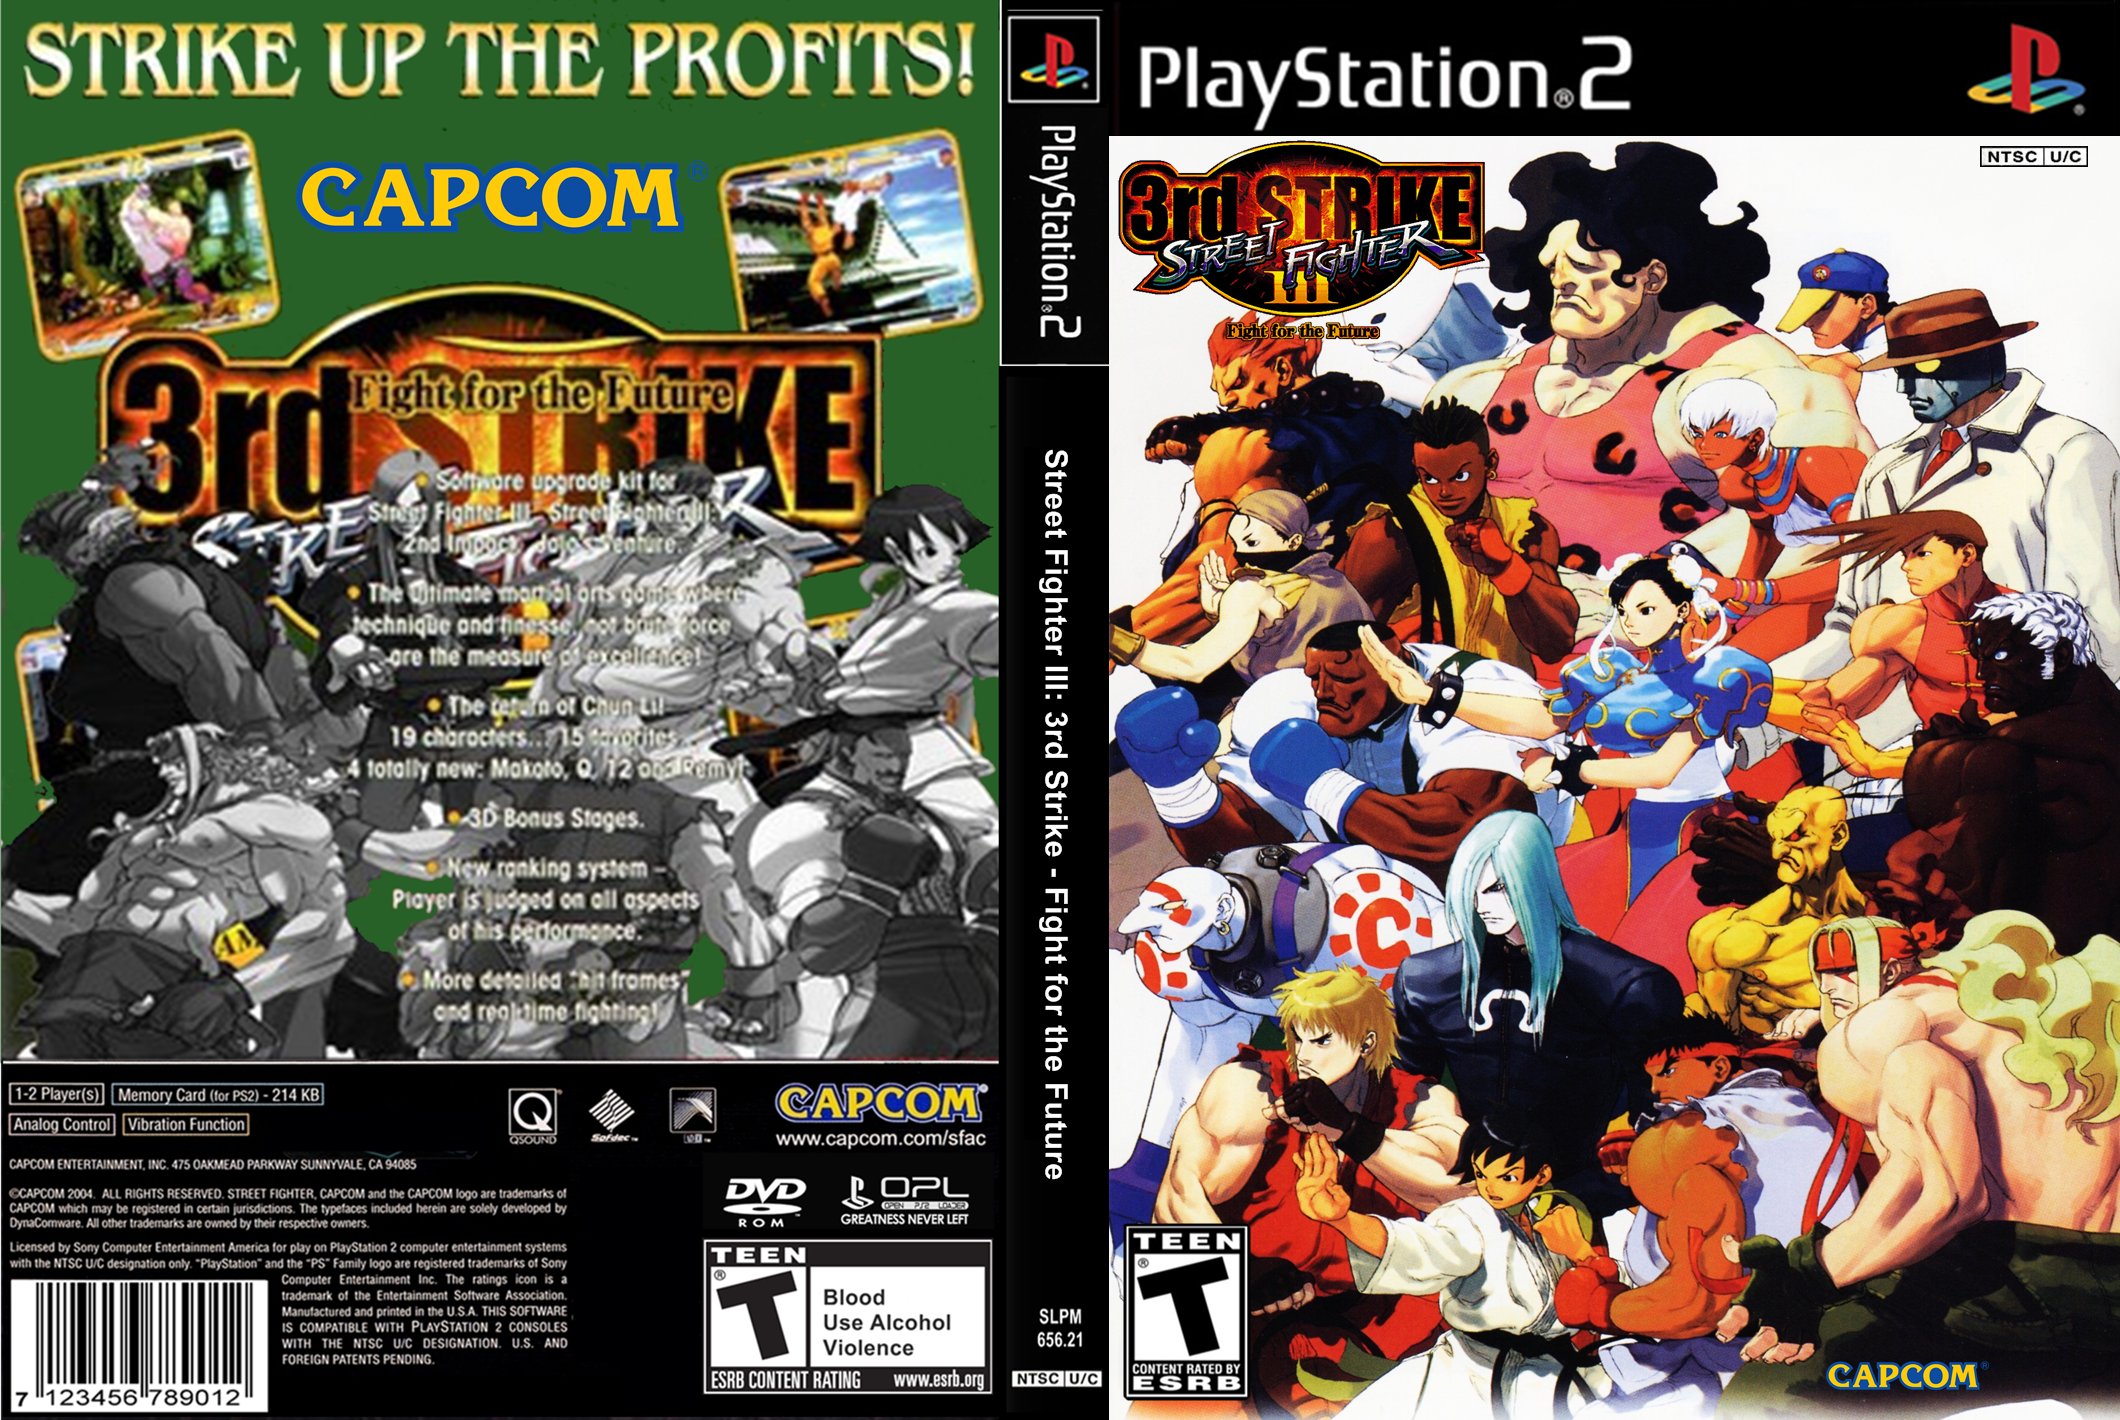 1942: Joint Strike – shooter clássico da Capcom reformulado no PS3